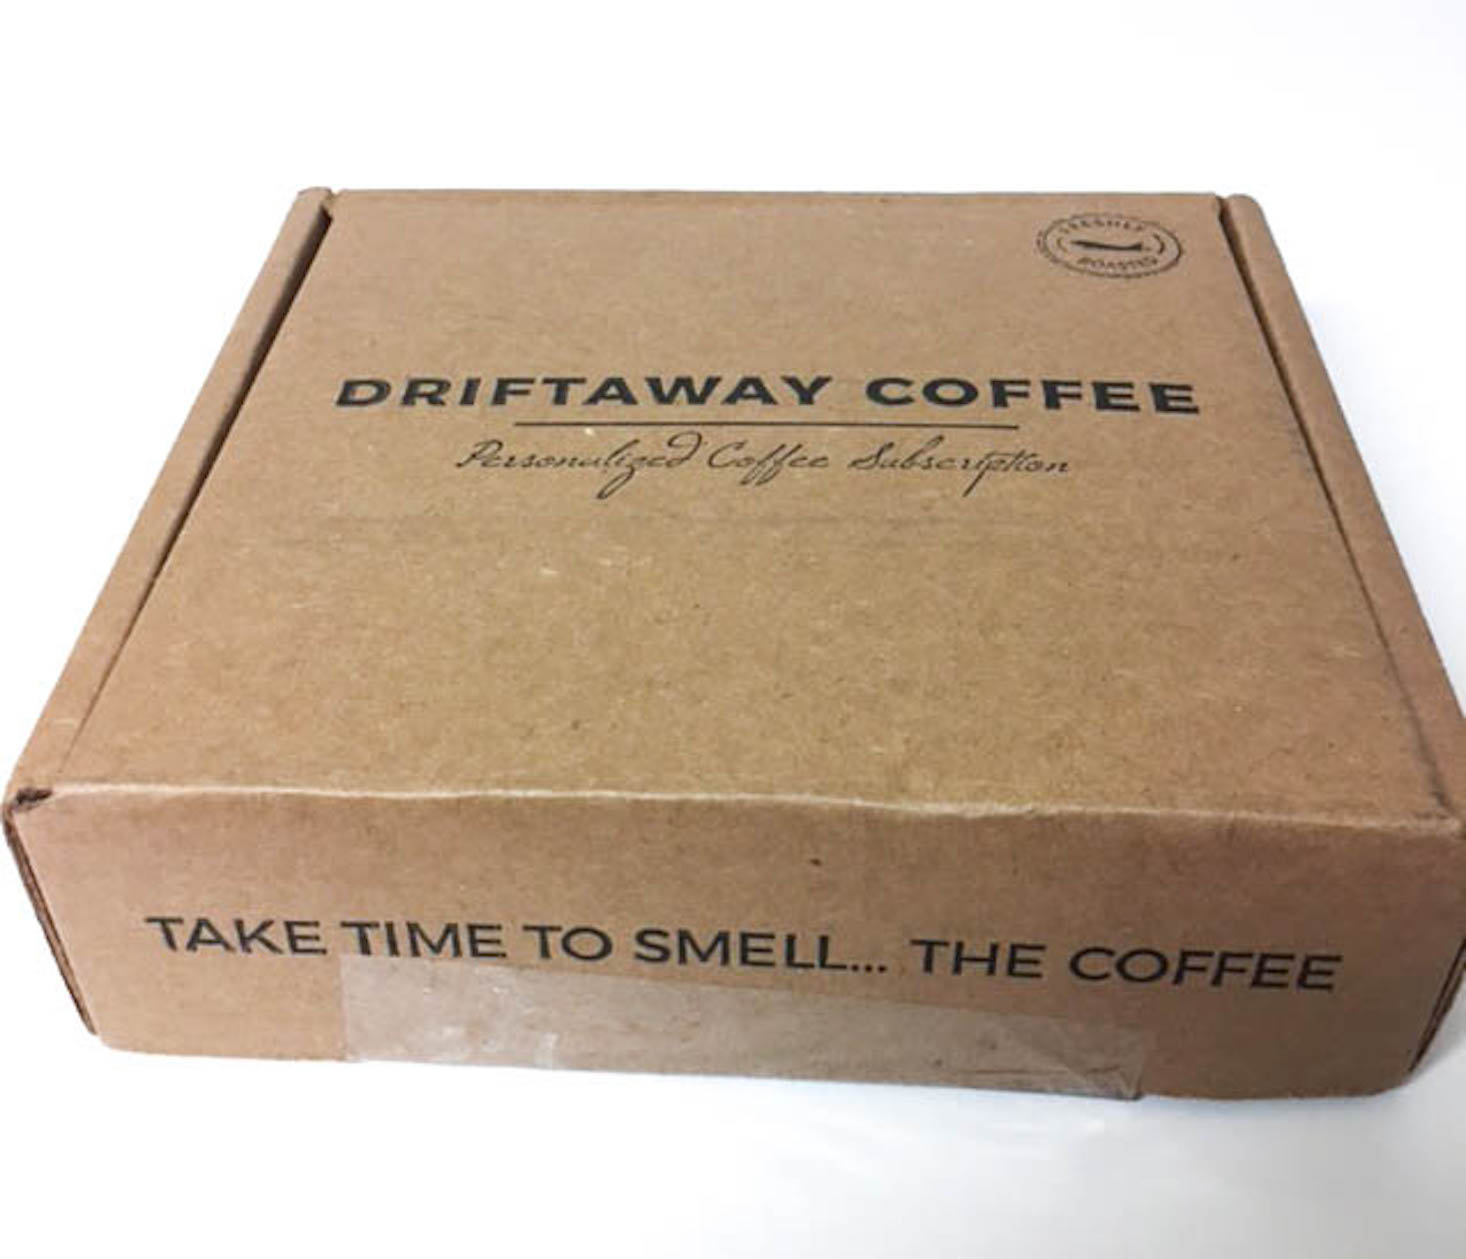 Driftaway Coffee Box Review + Coupon – April 2018